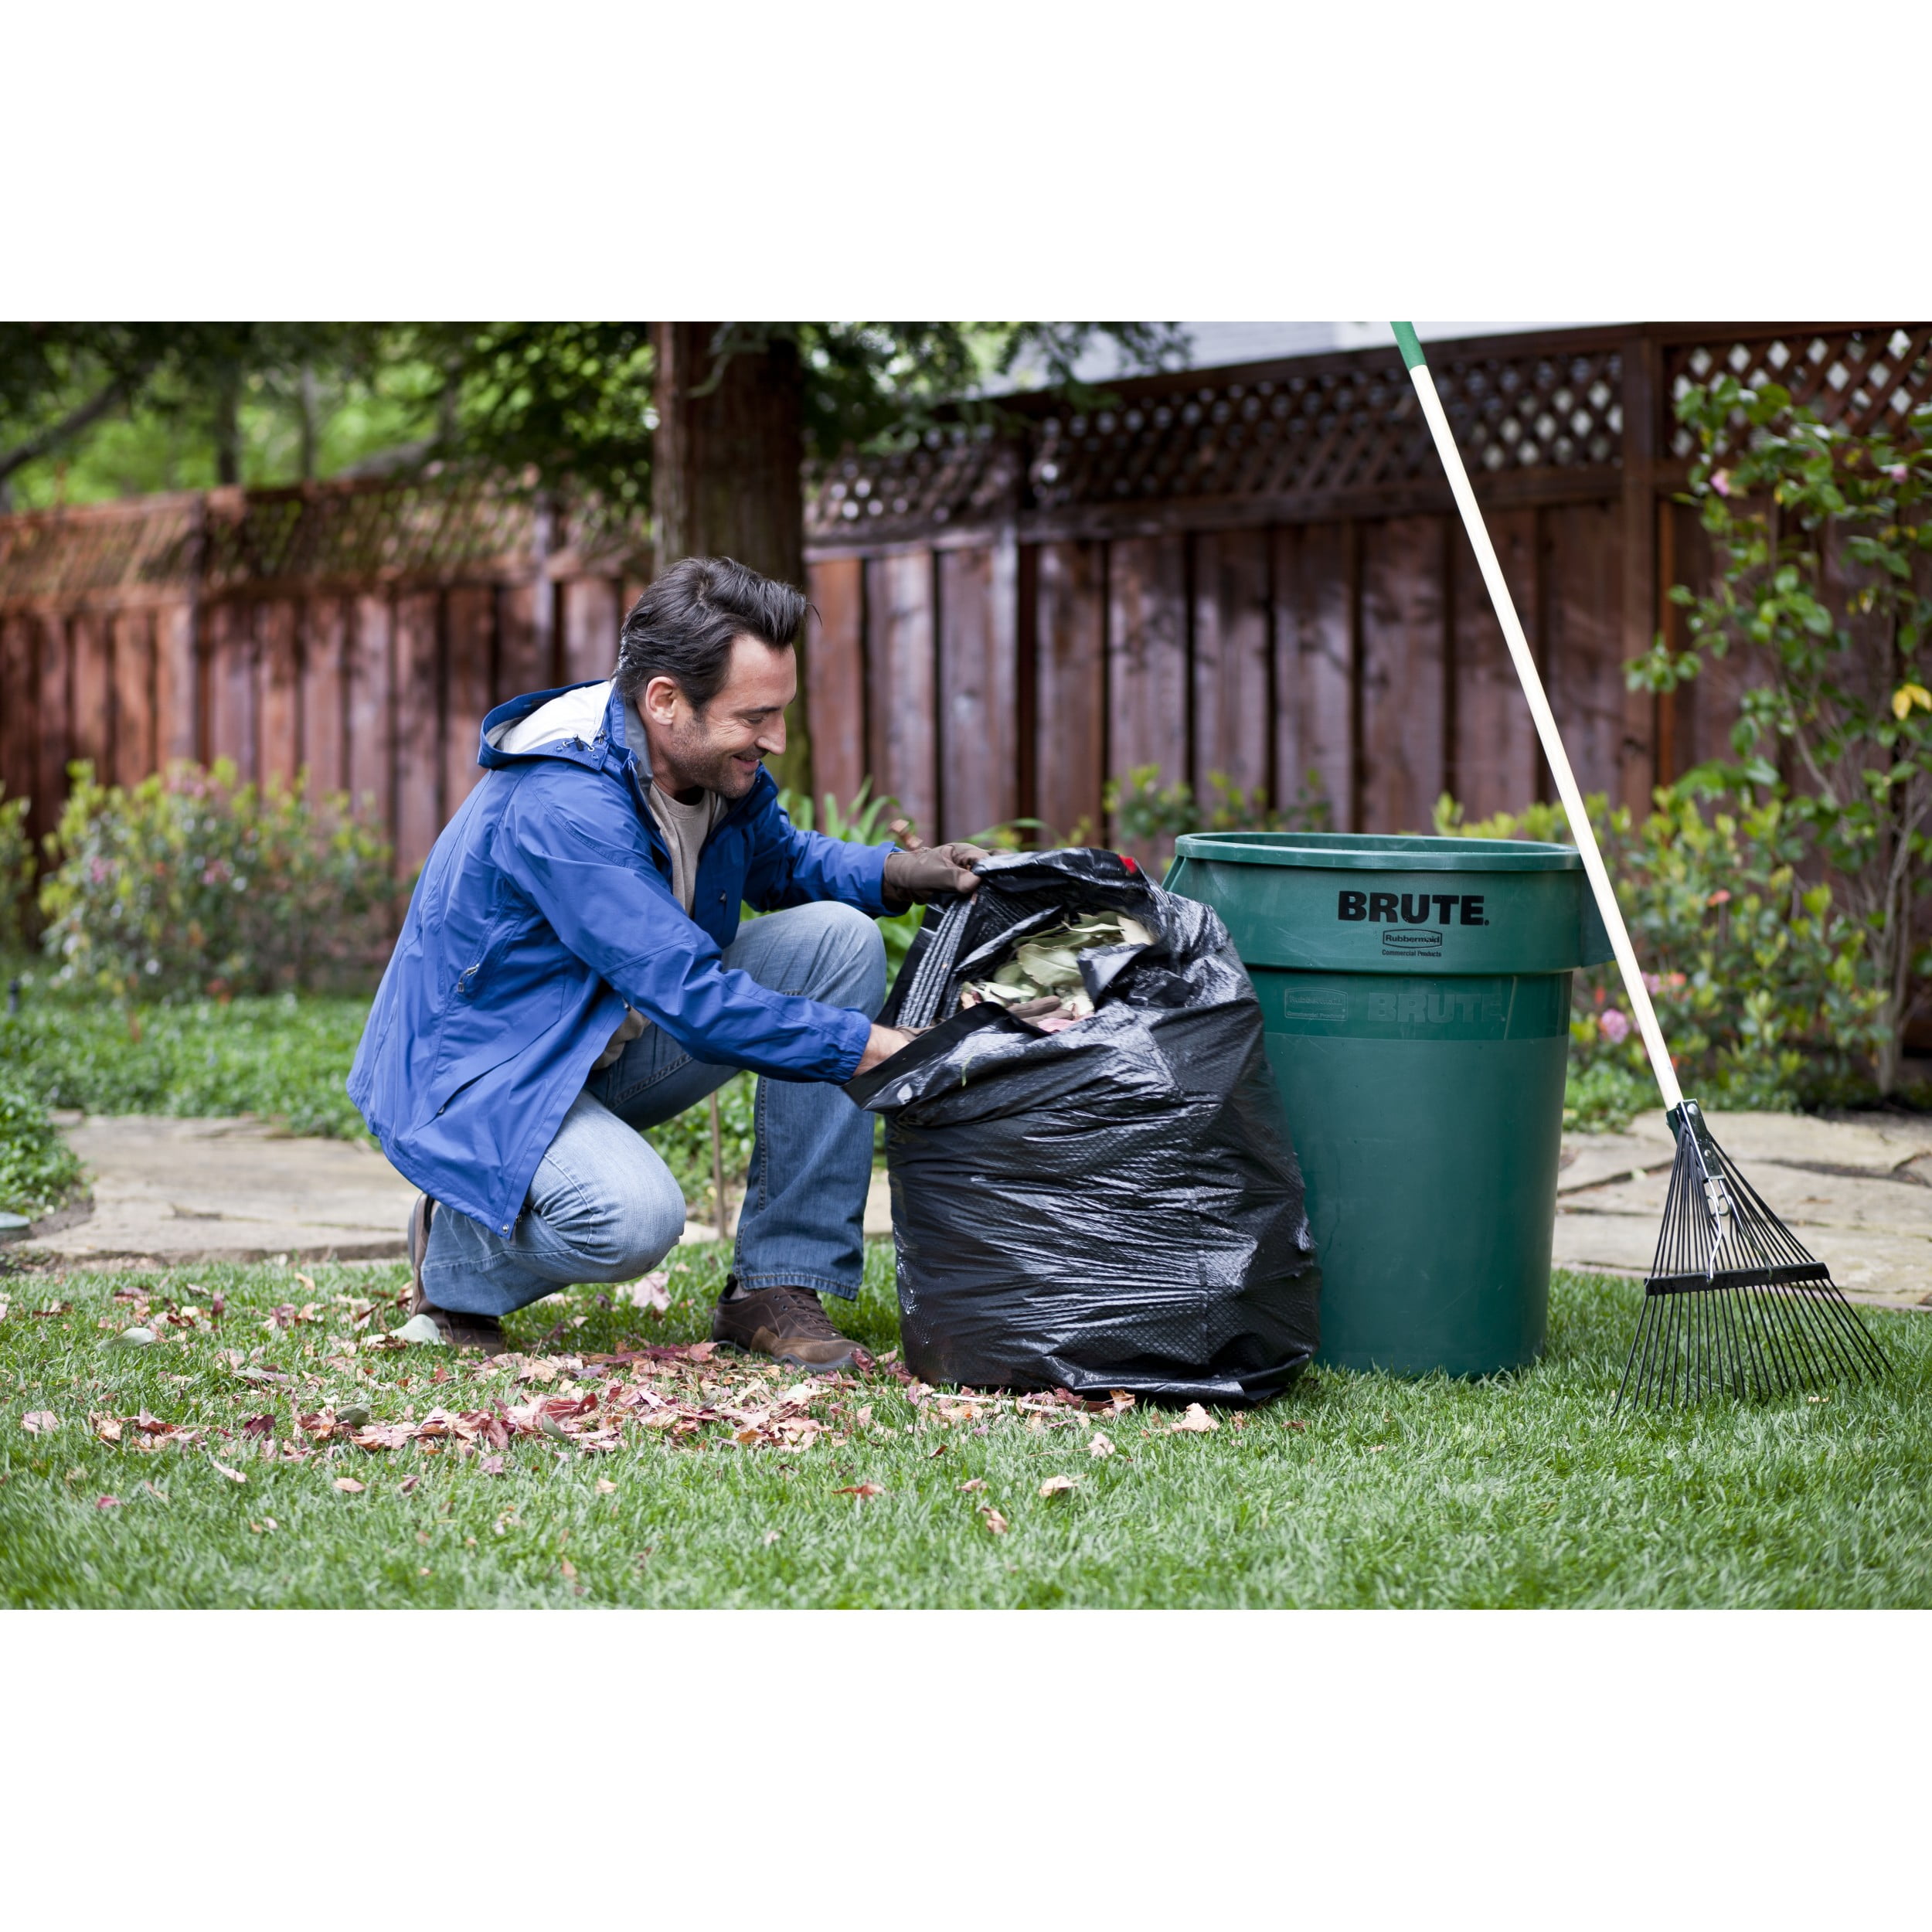 Clear Trash Bags 39 Gallon Lawn & Leaf Garbage Bags Drawstring 40